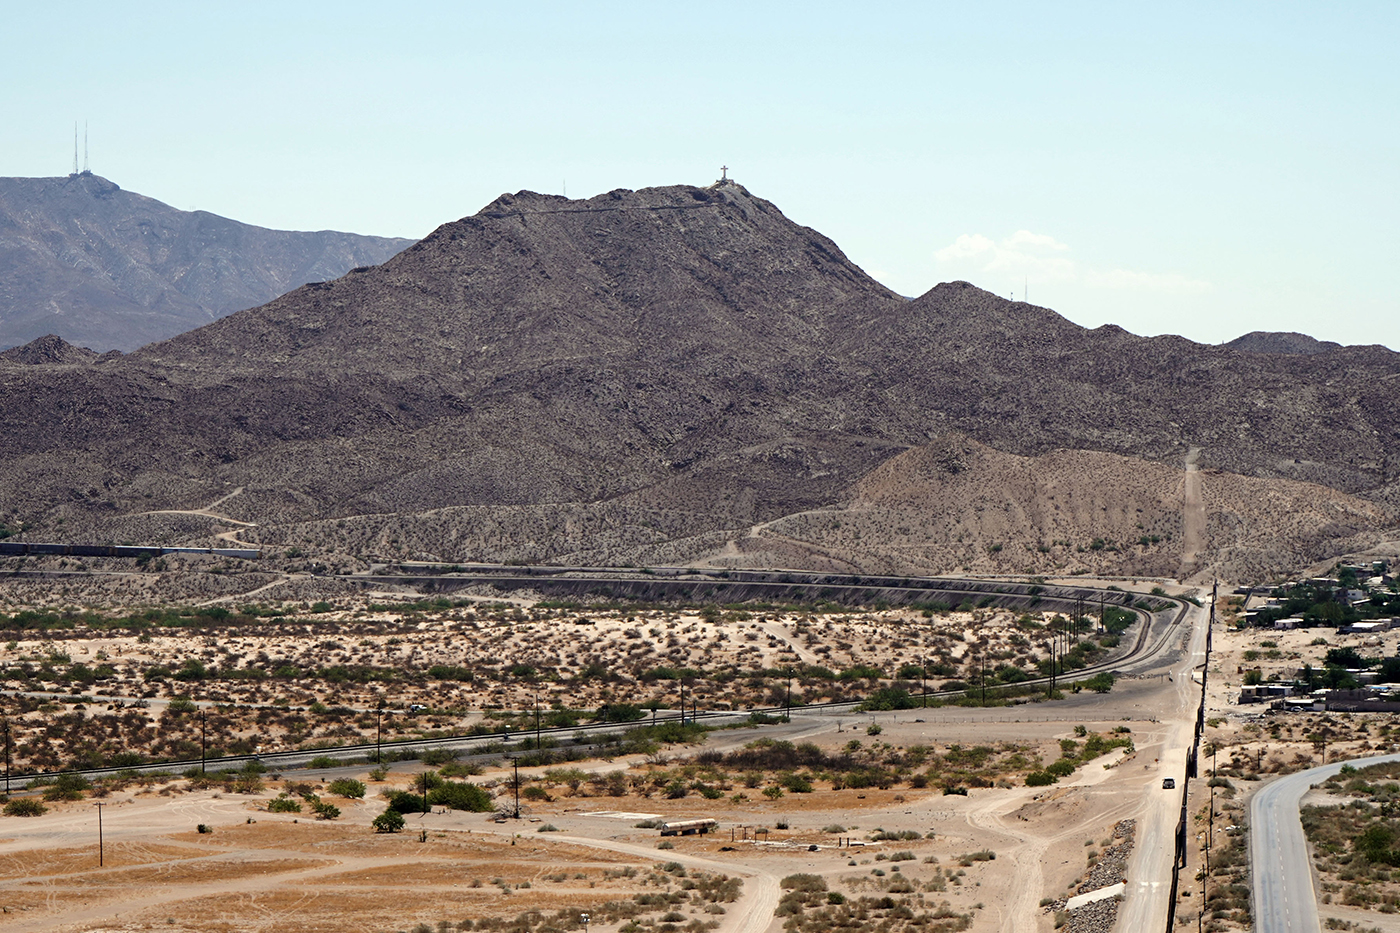 El muro que divide Ciudad Juárez de Sunland Park, Nuevo Mexico, se prolonga hasta zonas desérticas.